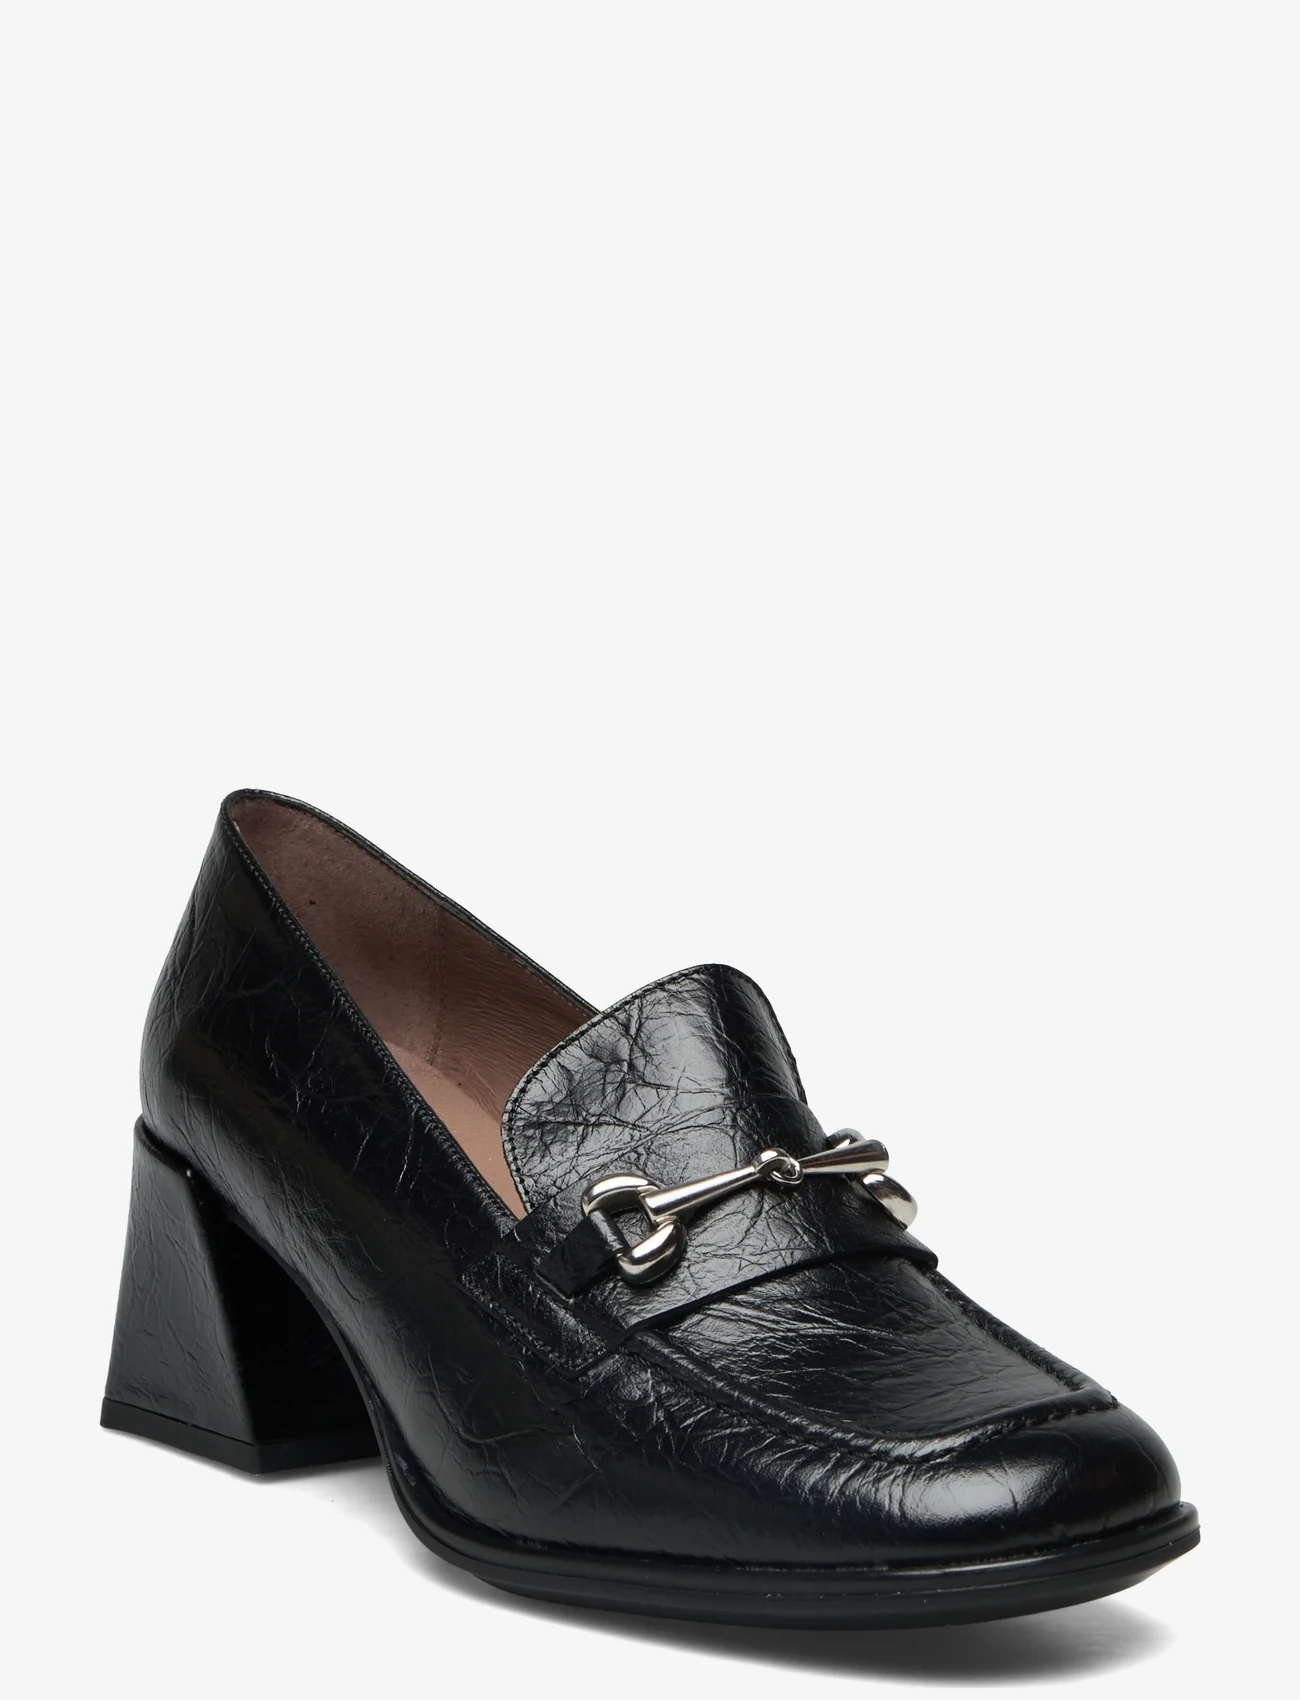 Wonders - CELIA - heeled loafers - negro - 0